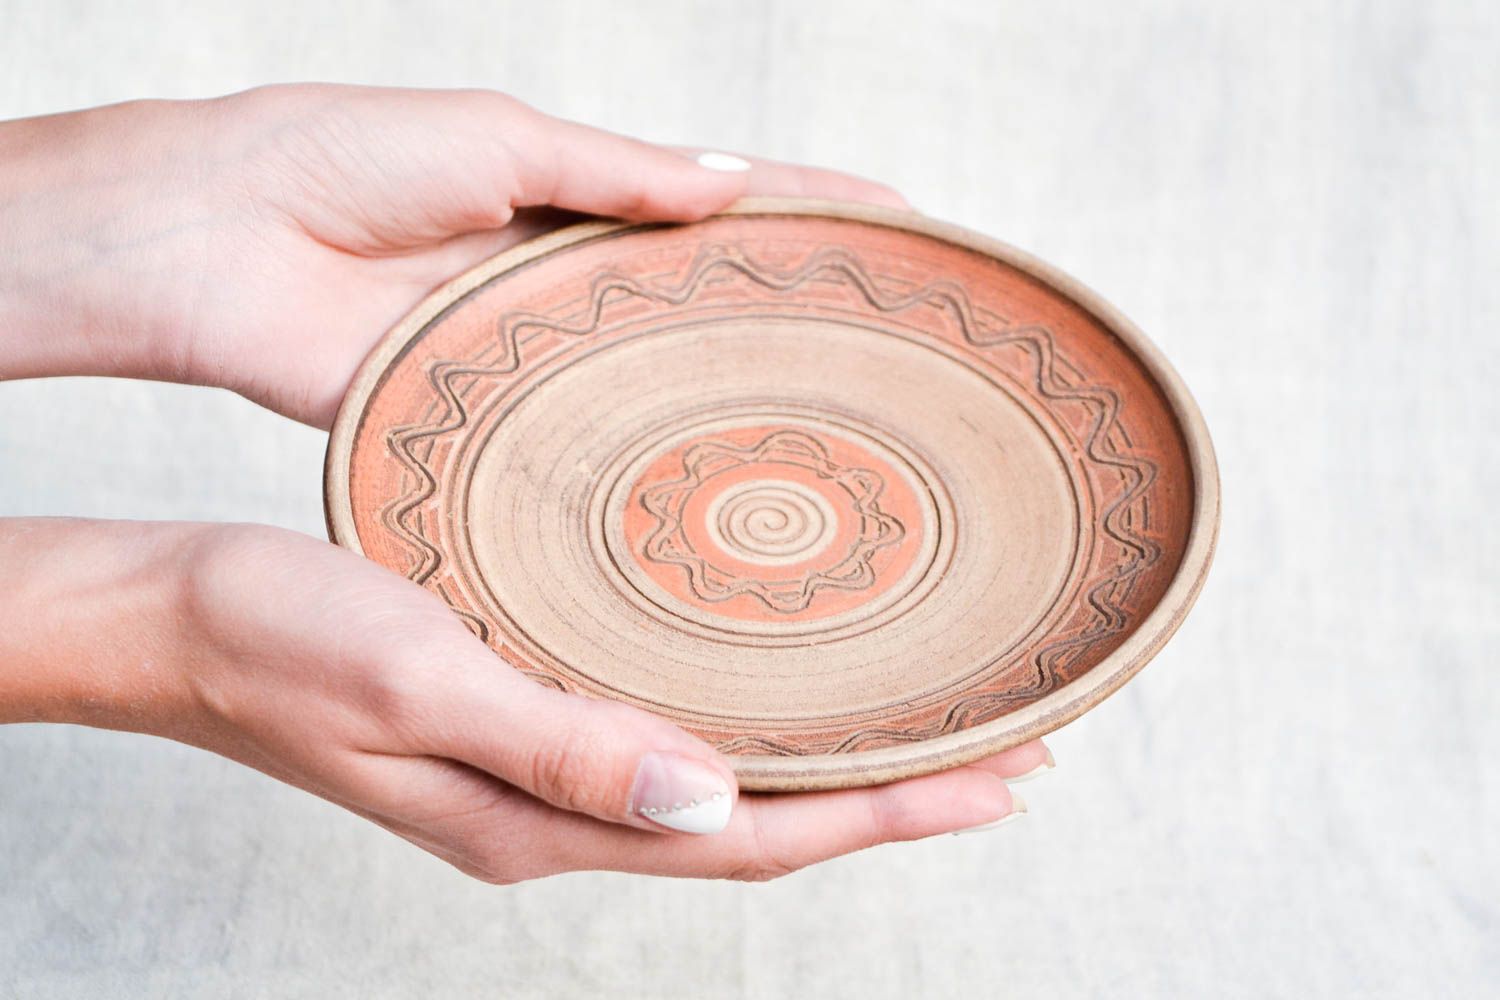 Расписная тарелка ручной работы глиняная посуда керамическая тарелка настенная фото 2